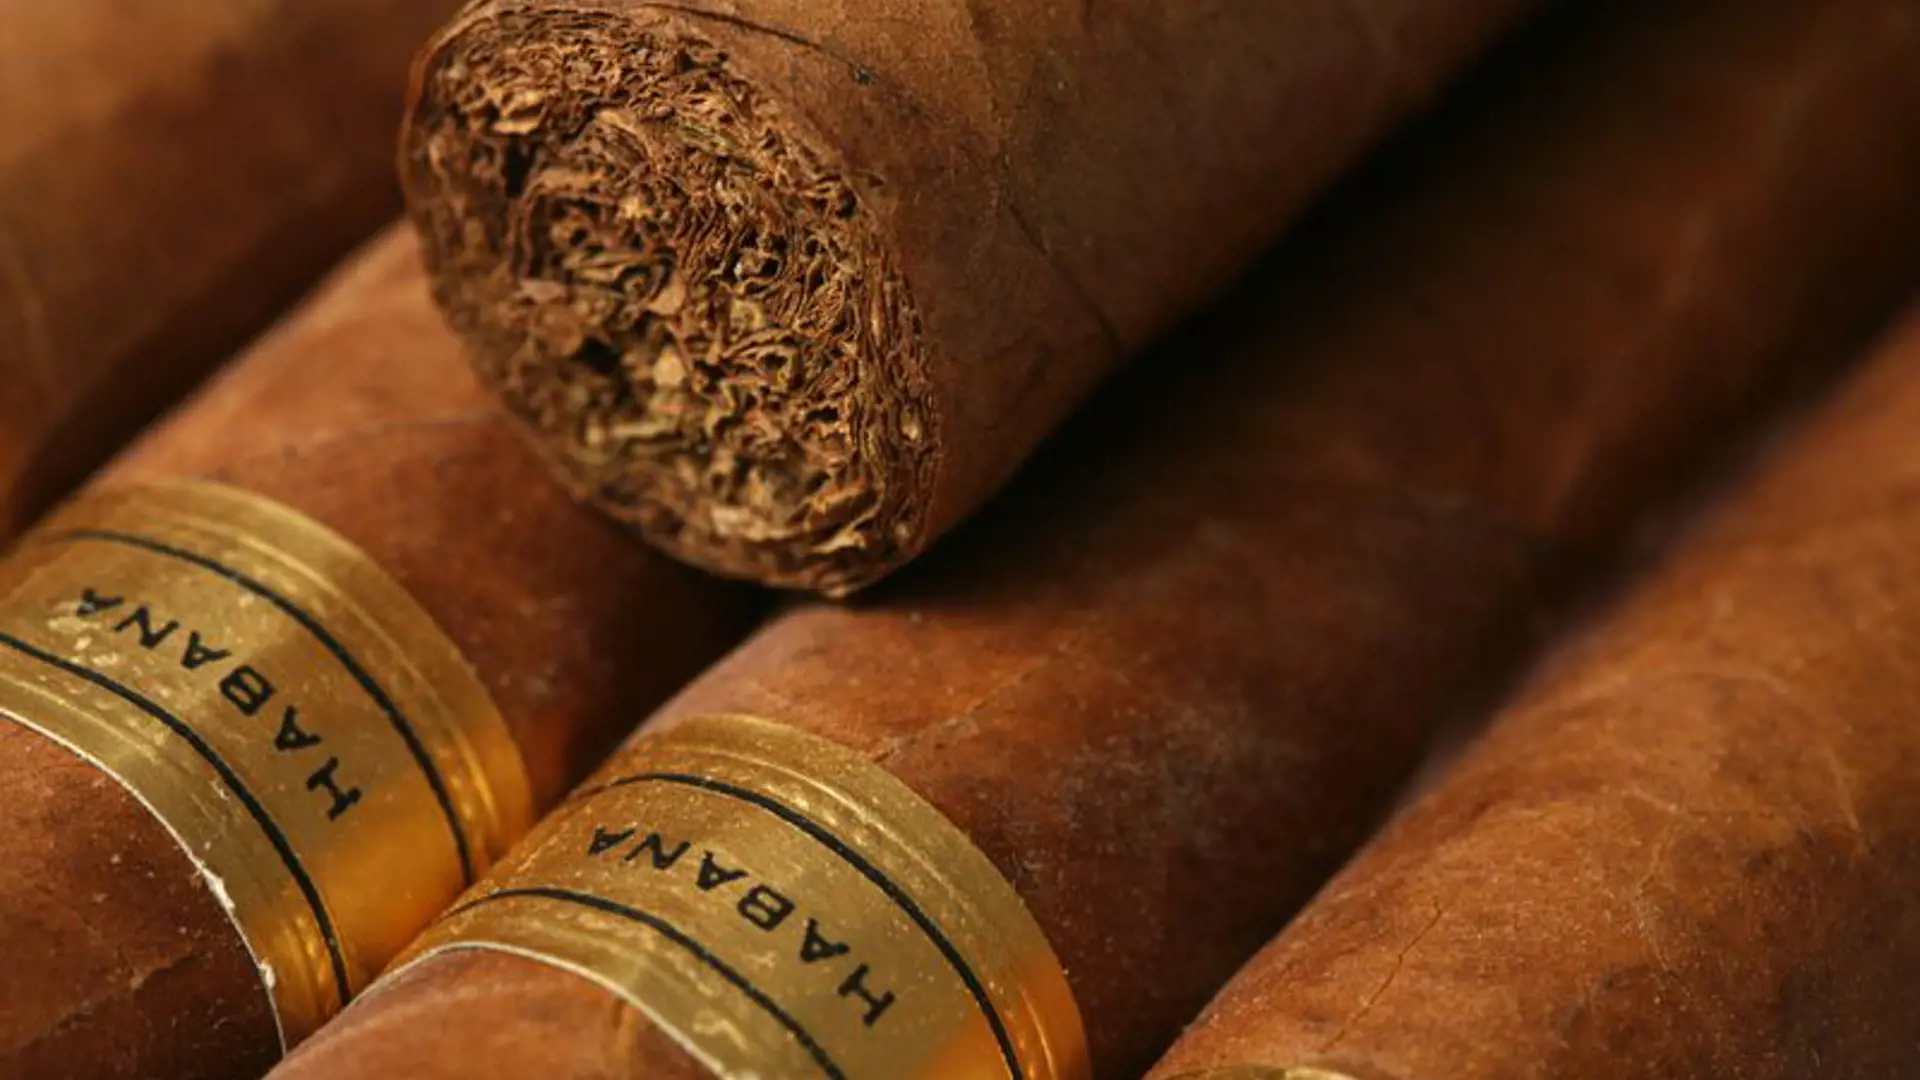 KULTUR - cubanerne fremstiller nogle af Verdens bedste cigarer, og der er mulighed for at følge produktionen fra marken til butikken, Check Point Travel